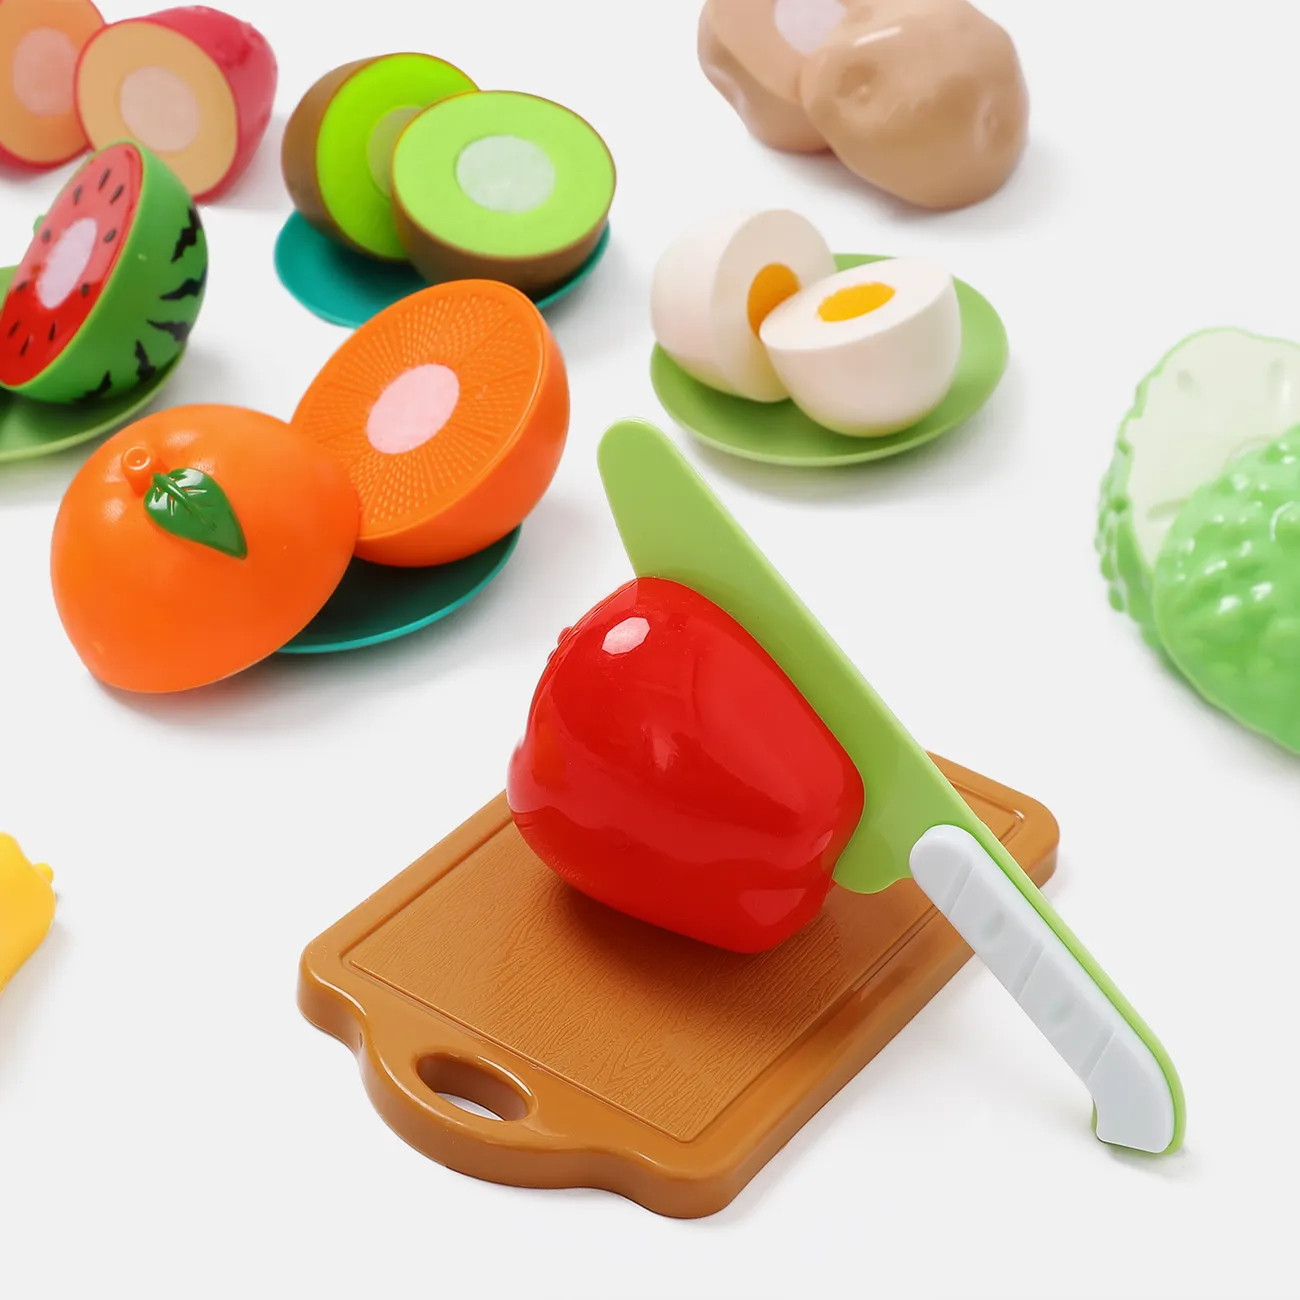 16 قطعة خالية من مادة BPA البلاستيكية ، لعبة طعام للأطفال قابلة للتقطيع ، مجموعة خضروات وفواكه مع سكاكين ولوح تقطيع وألواح (سكين لون عشوائي) اللون- أ big image 1